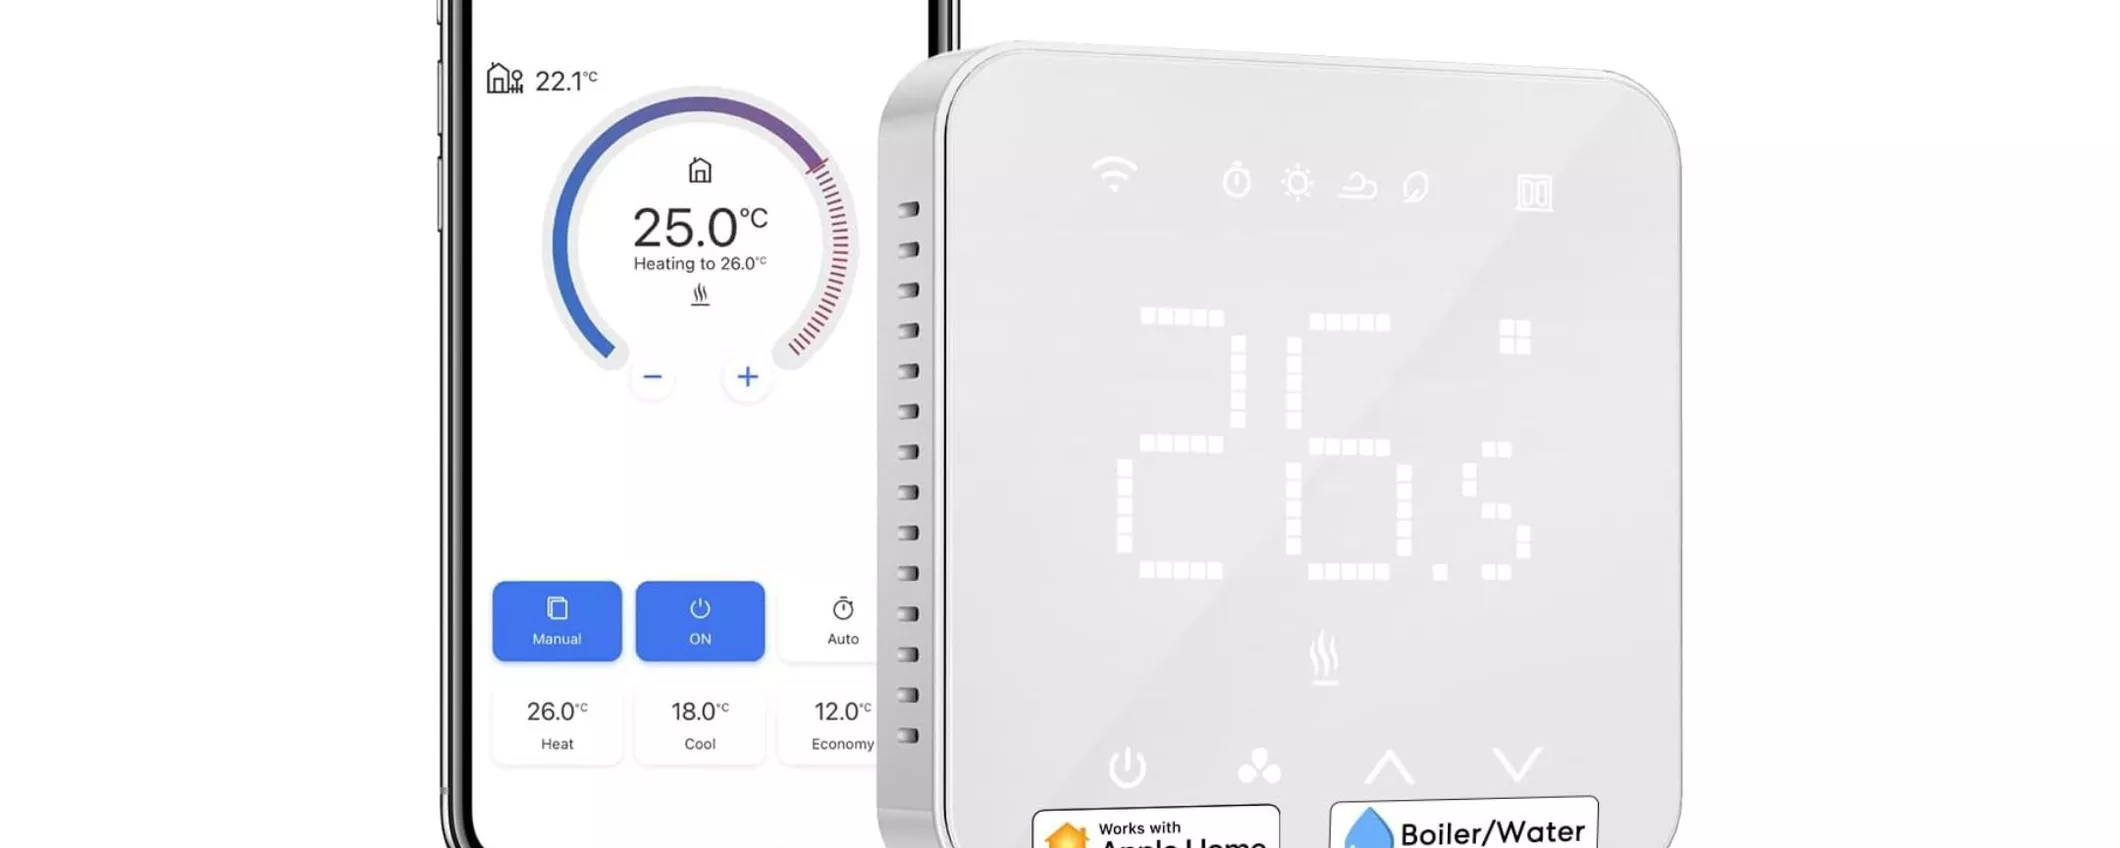 Termostato Smart WiFi: lo controlli con Alexa per calore e frescura come vuoi tu!